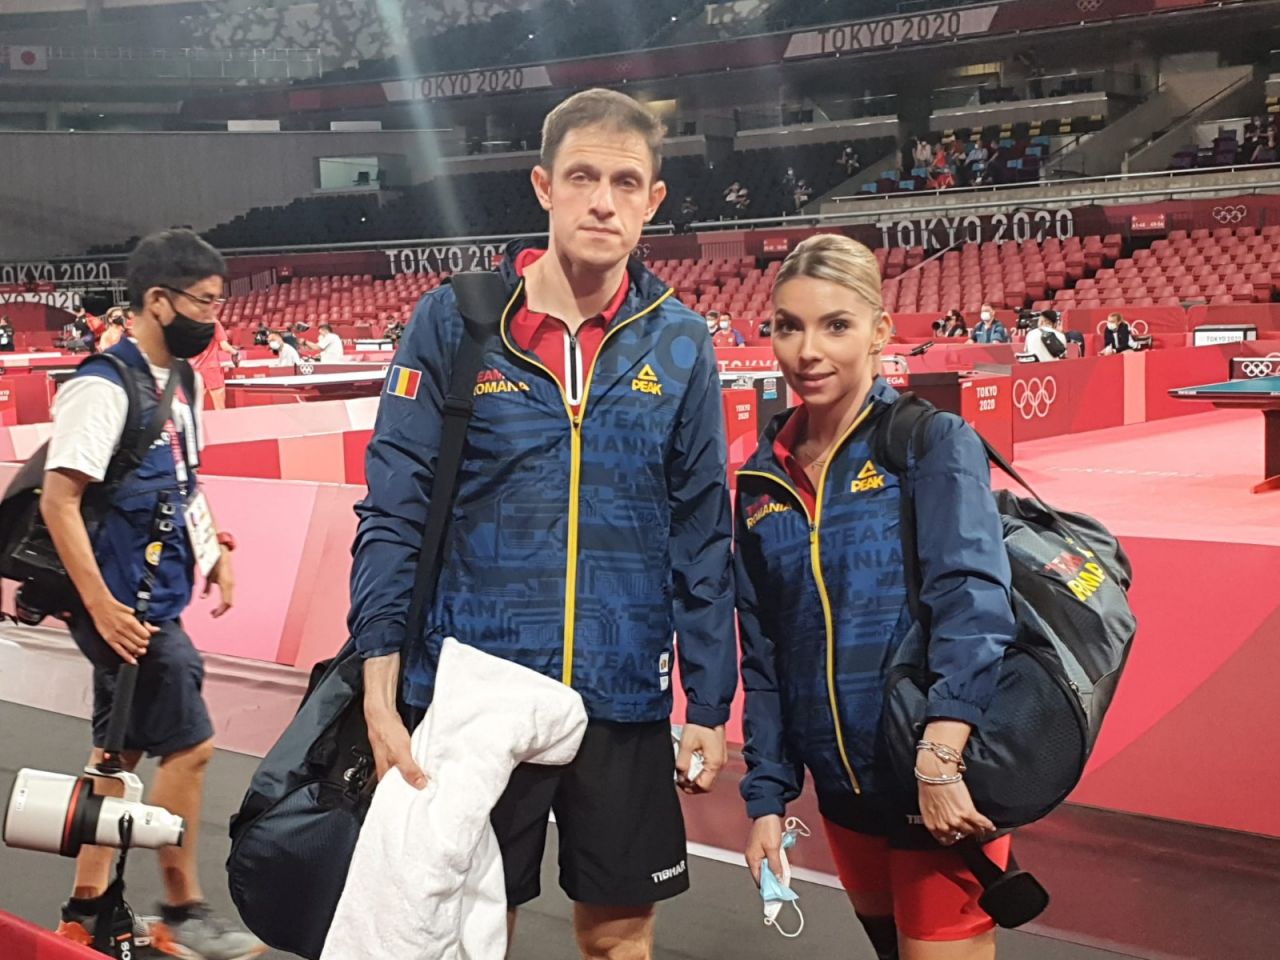 Reacția Federației după ce Bernadette Szocs și Ovidiu Ionescu s-au calificat la Jocurile Olimpice _30